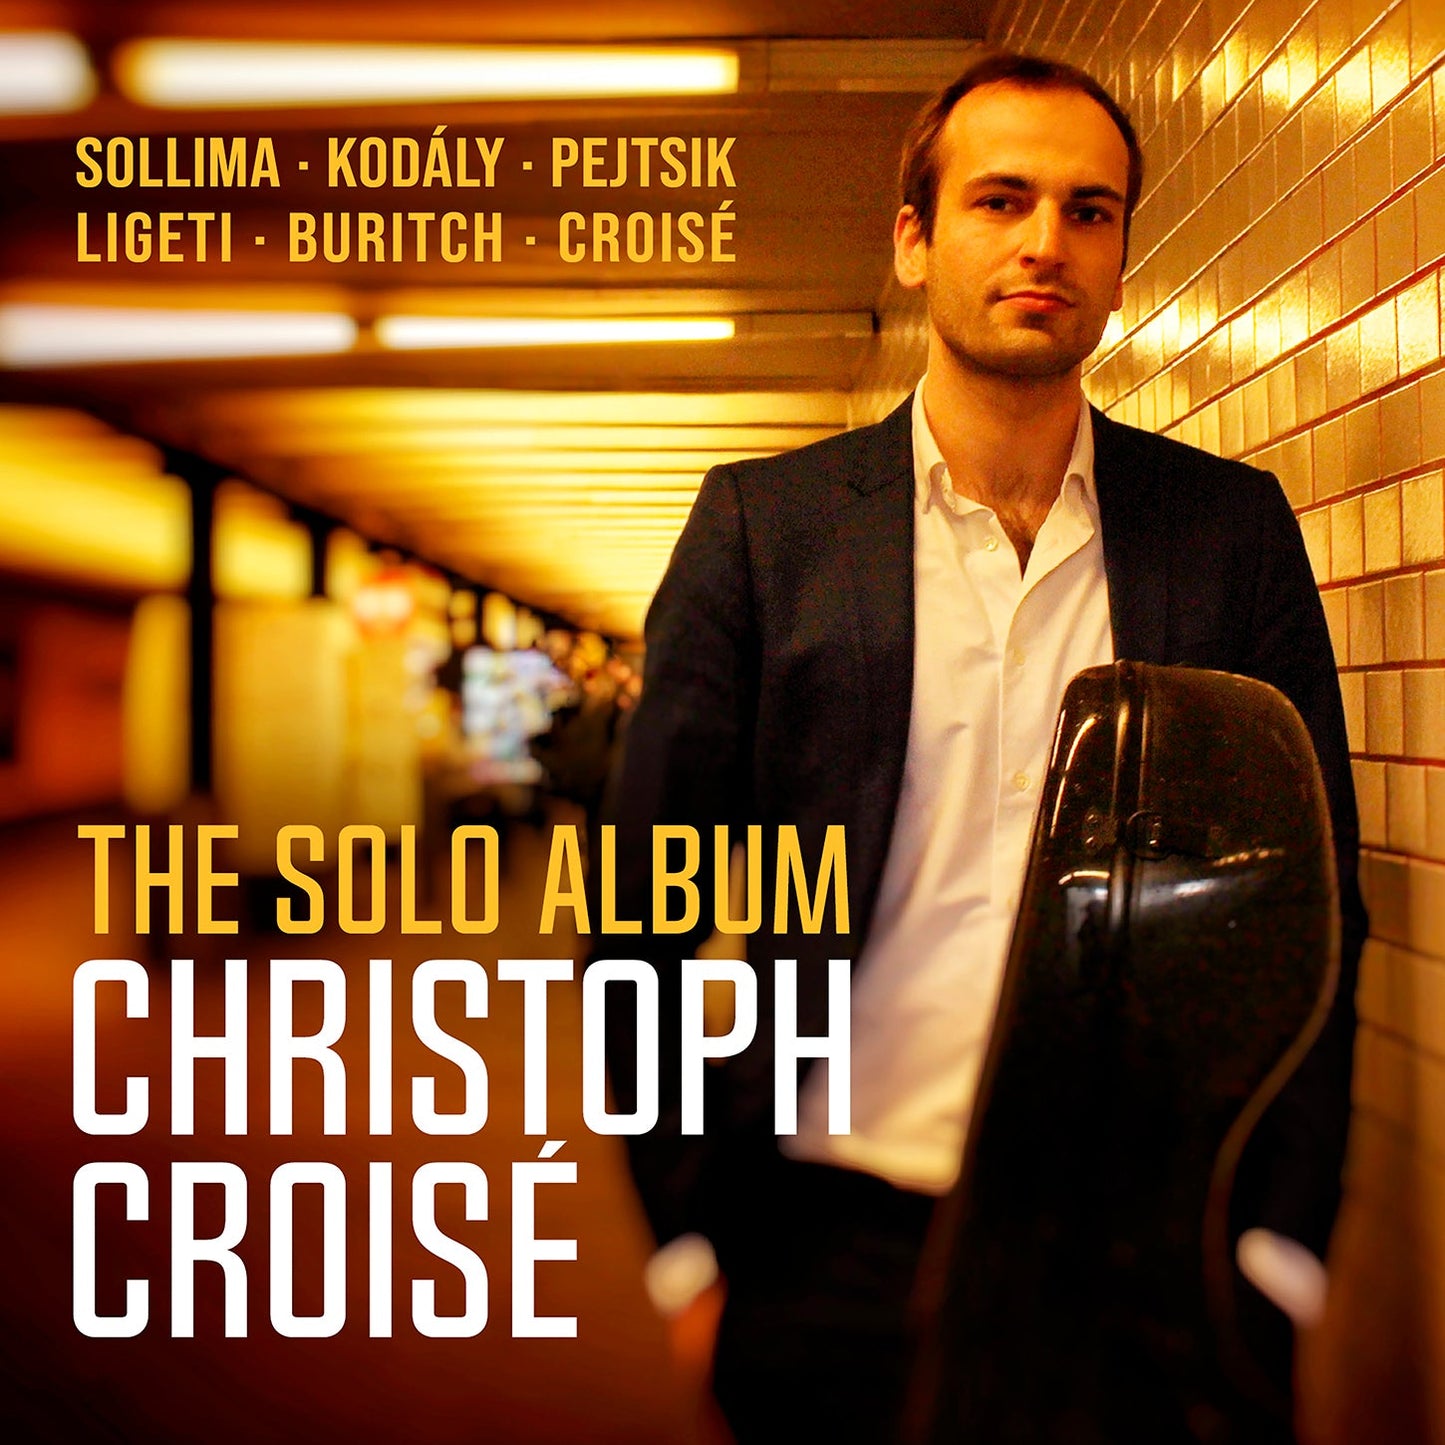 Christoph Croisé - The Solo Album